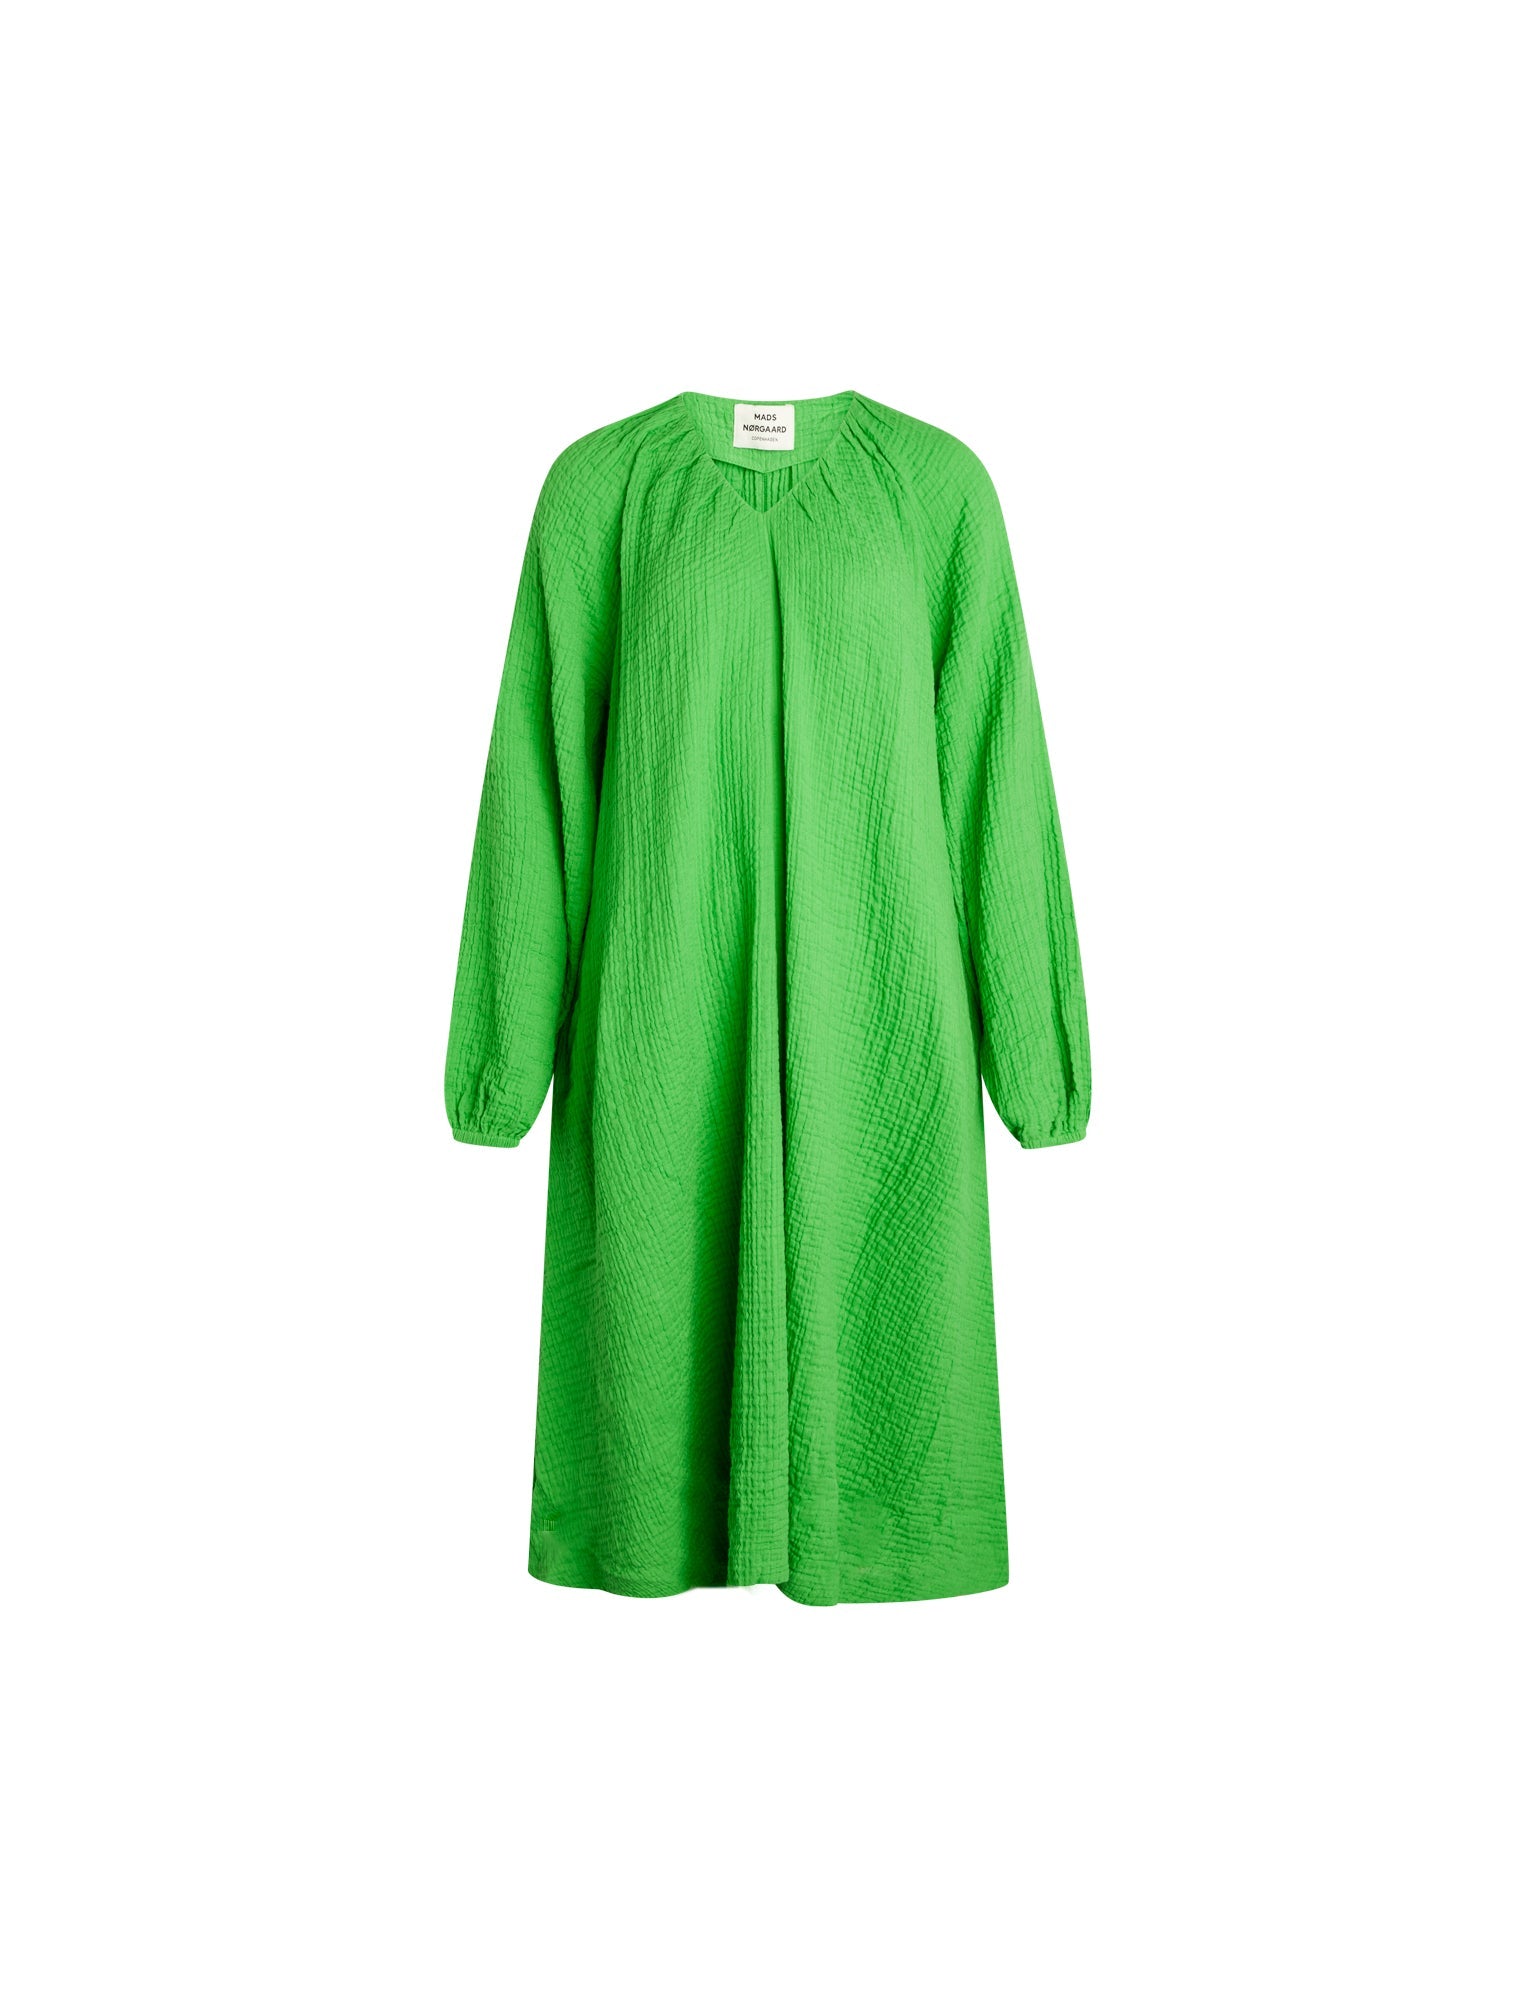 Gaze dress in green